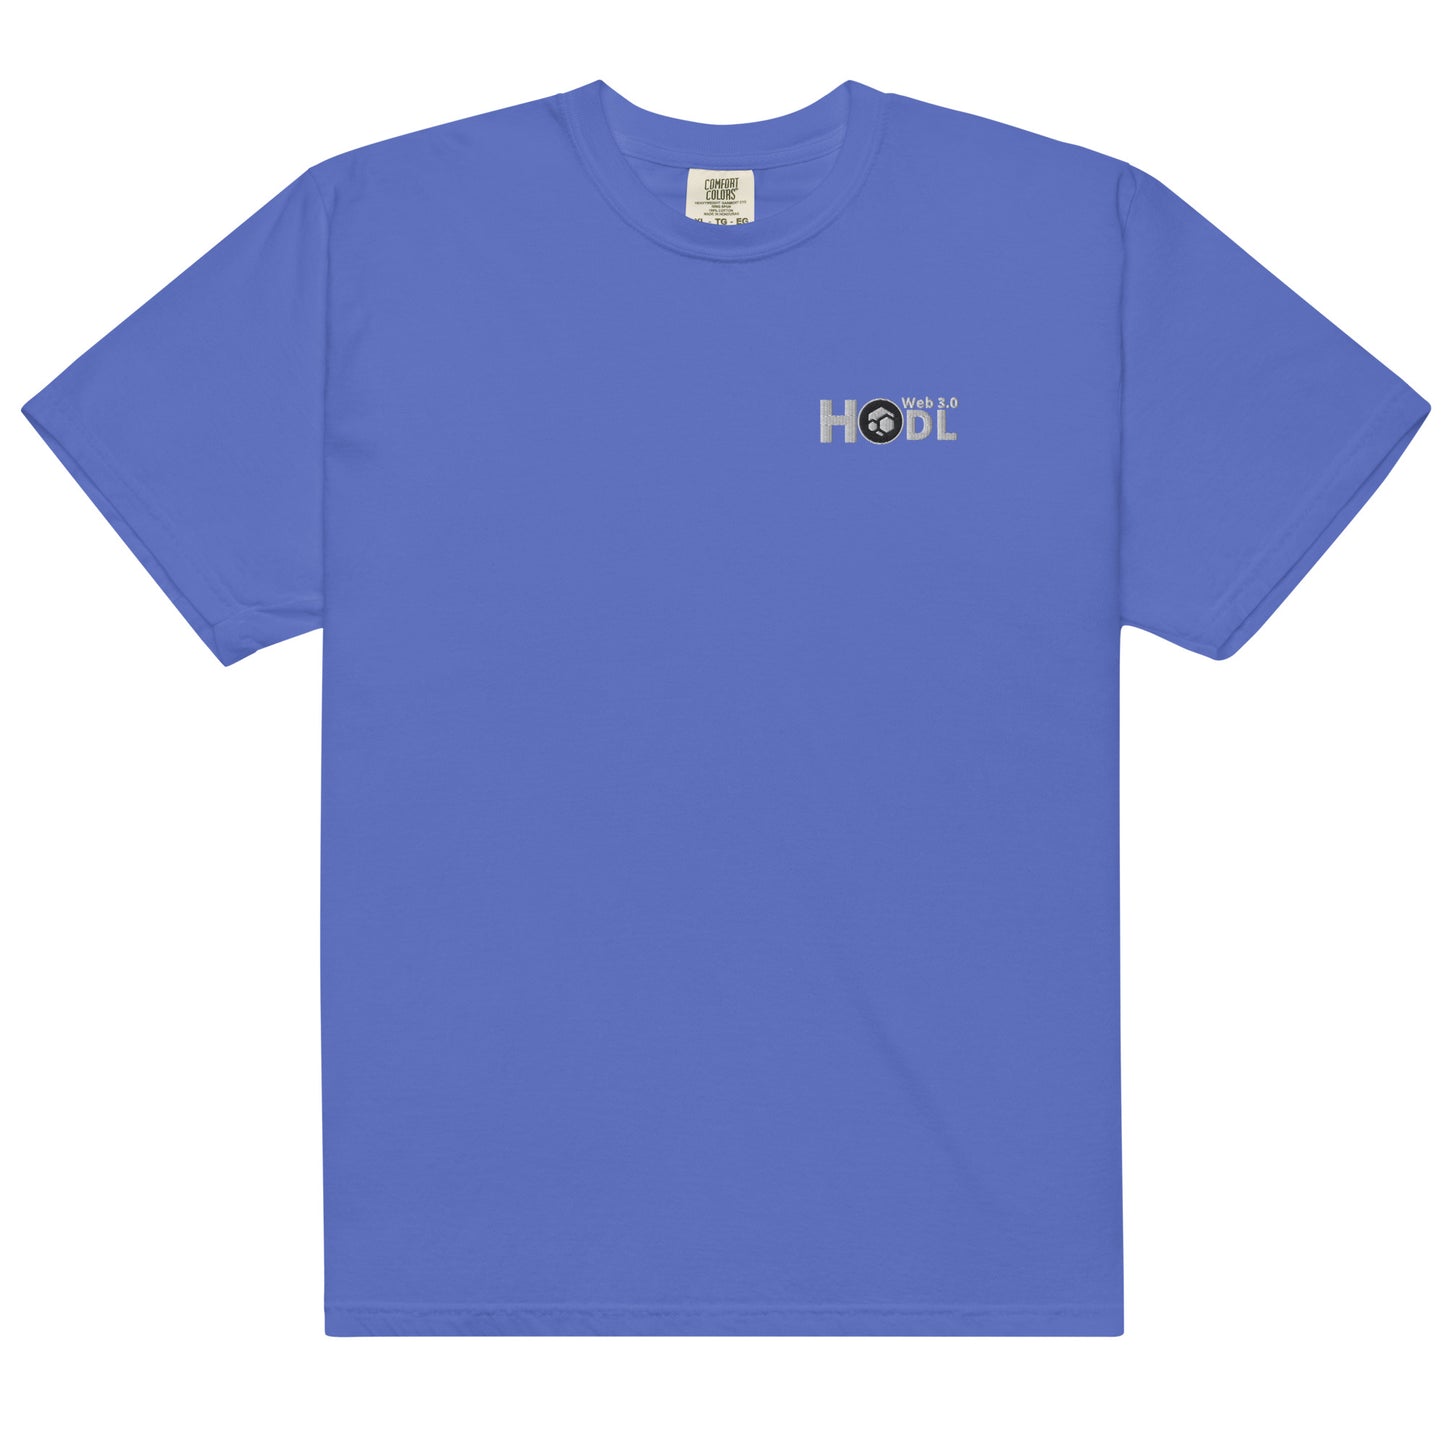 FLUX "HODL" Men’s Garment-Dyed Heavyweight T-Shirt